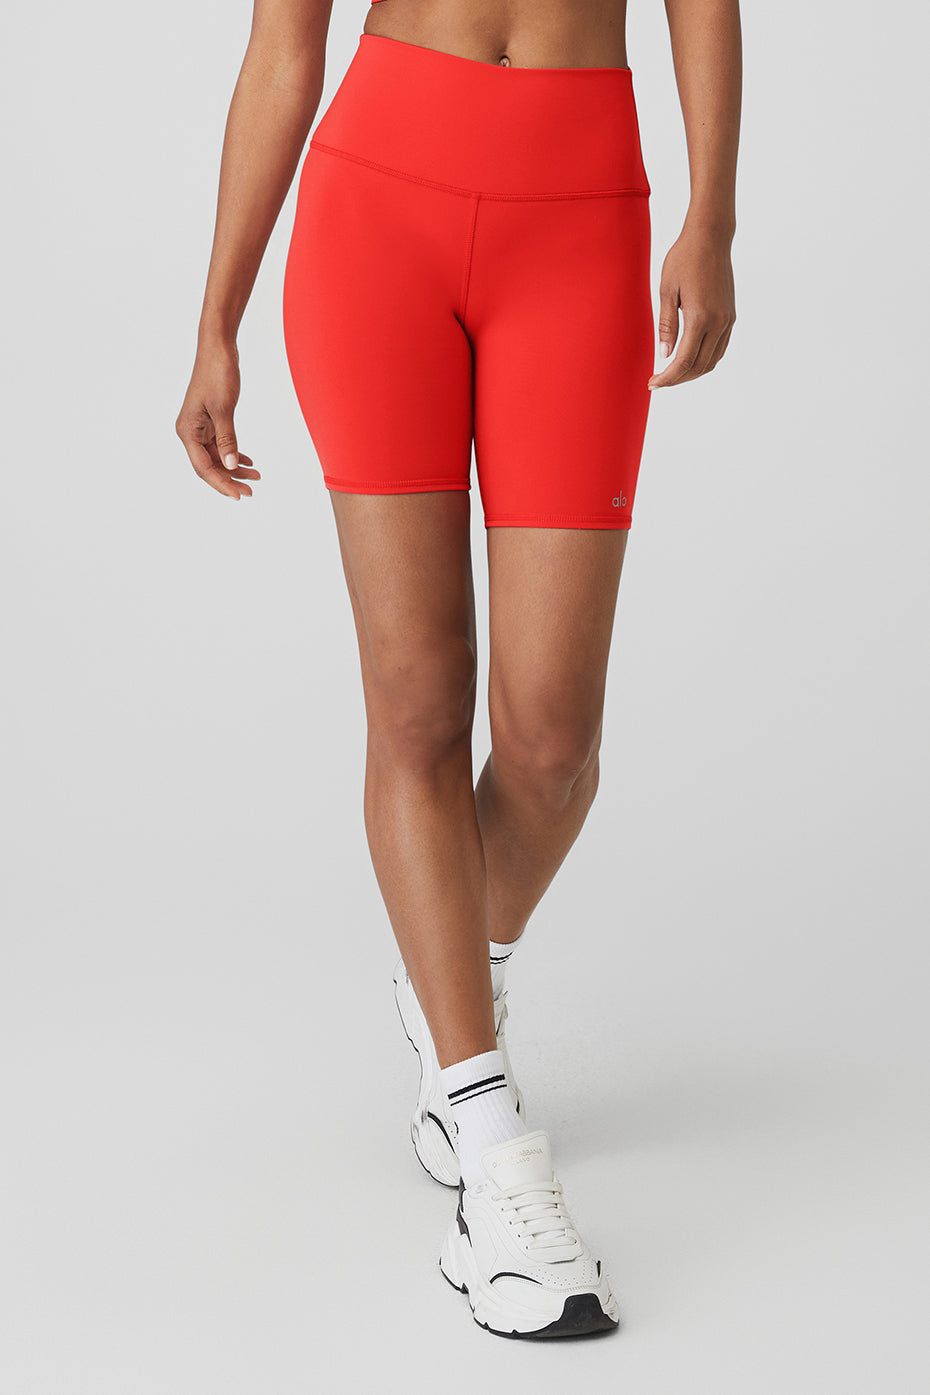 Red Cycling Bib Shorts Women - Shorter Inseam